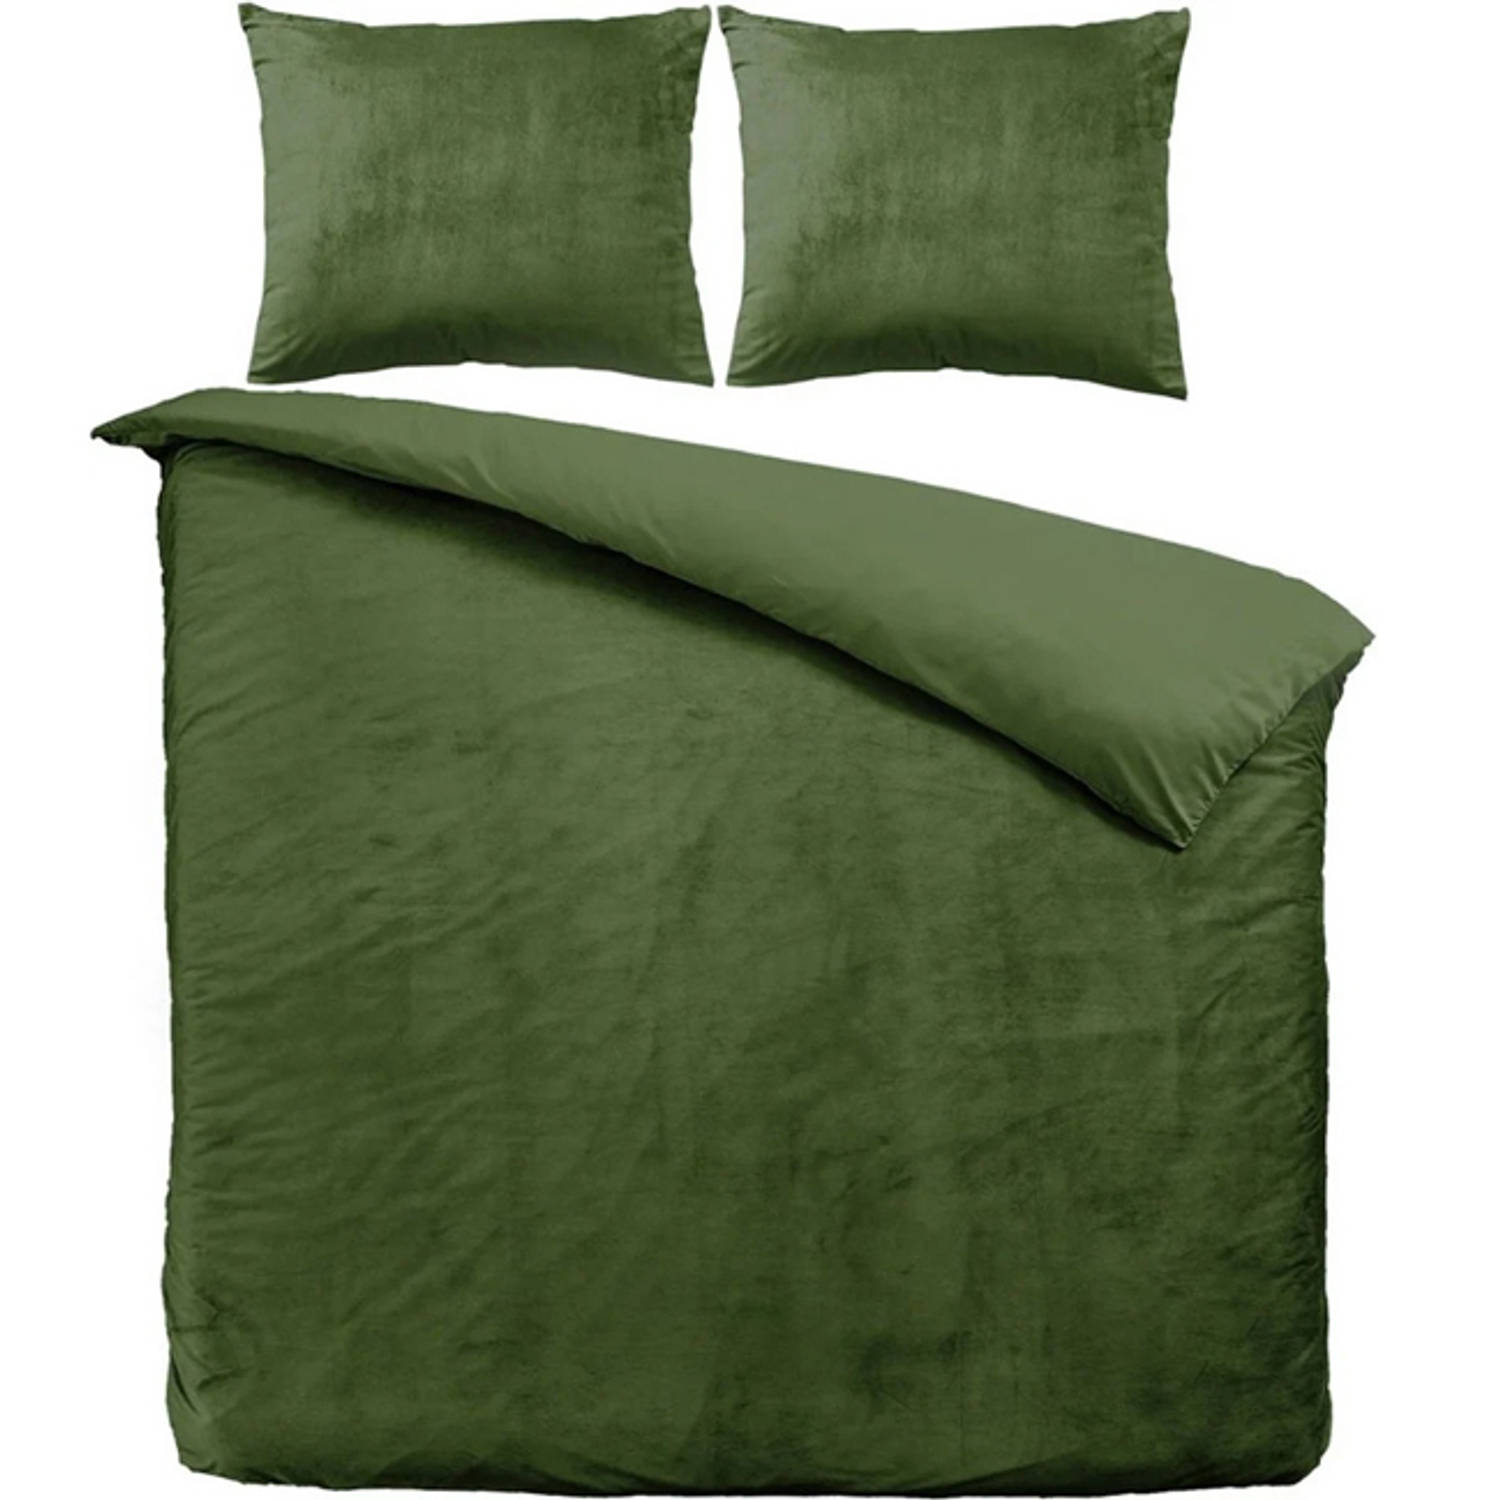 Zavelo Dekbedovertrek Velvet Comfort Groen-2-persoons (200 x 200-220 cm)